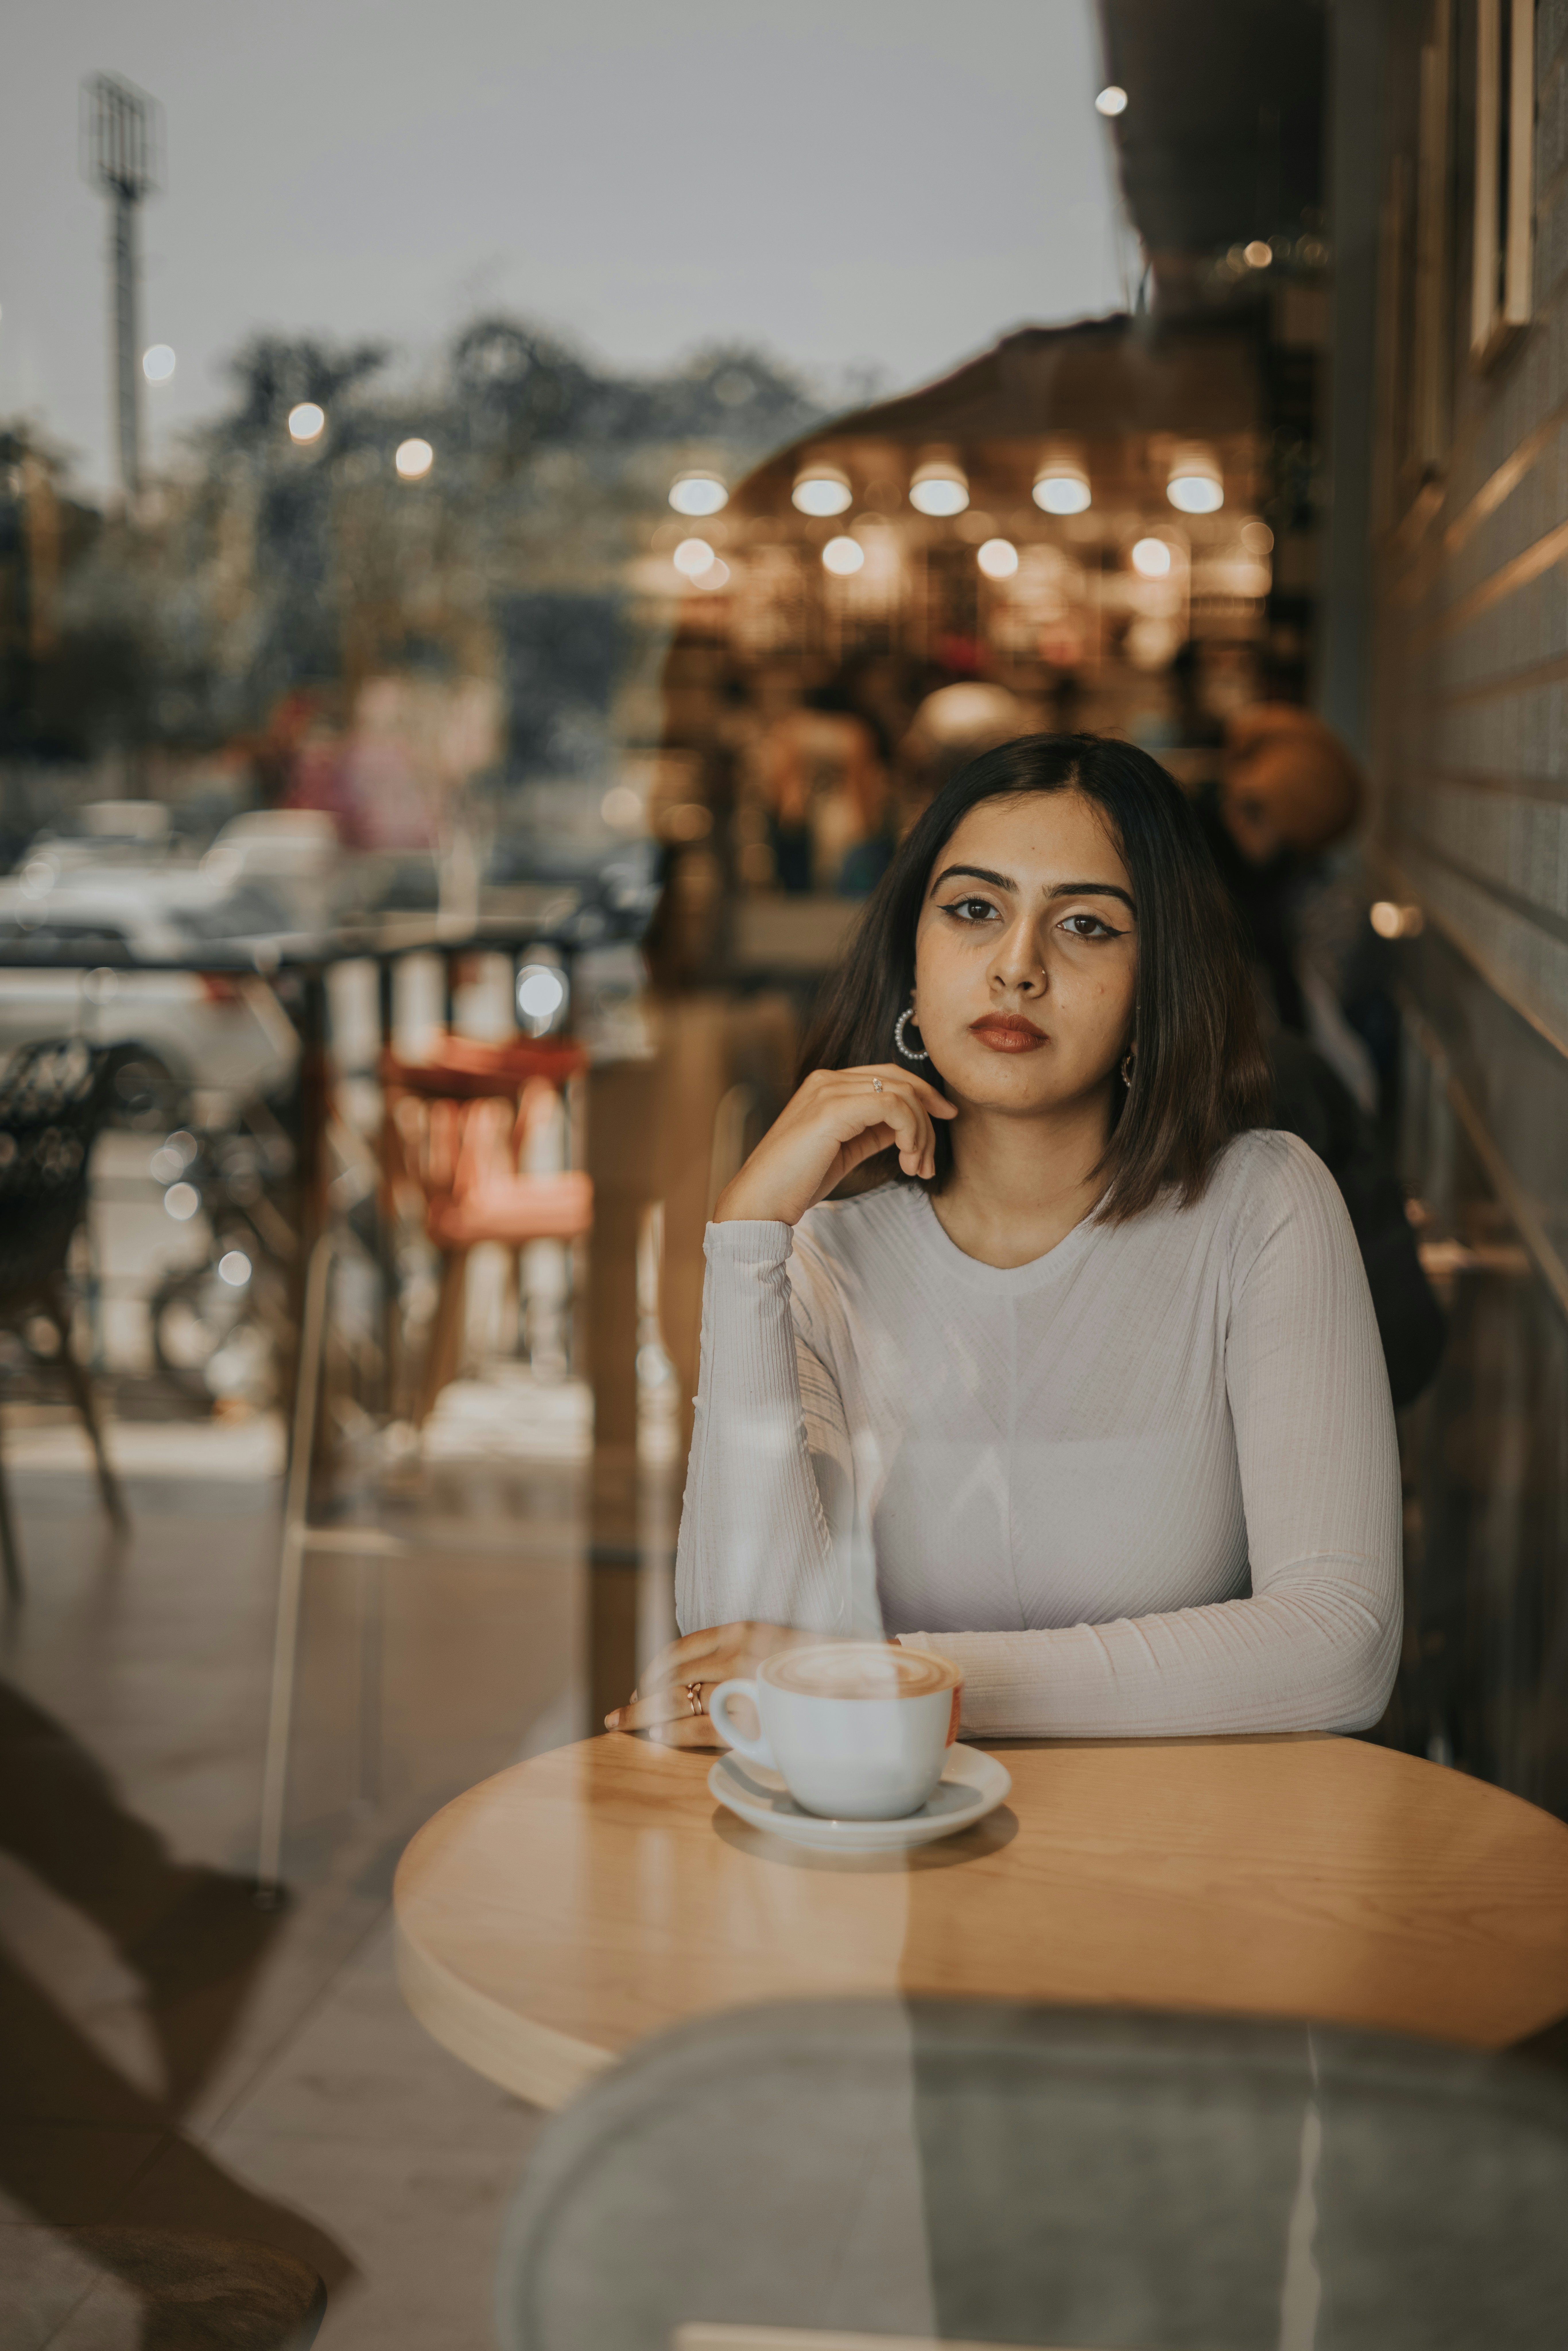 Una joven en una cafetería | Fuente: Unsplash